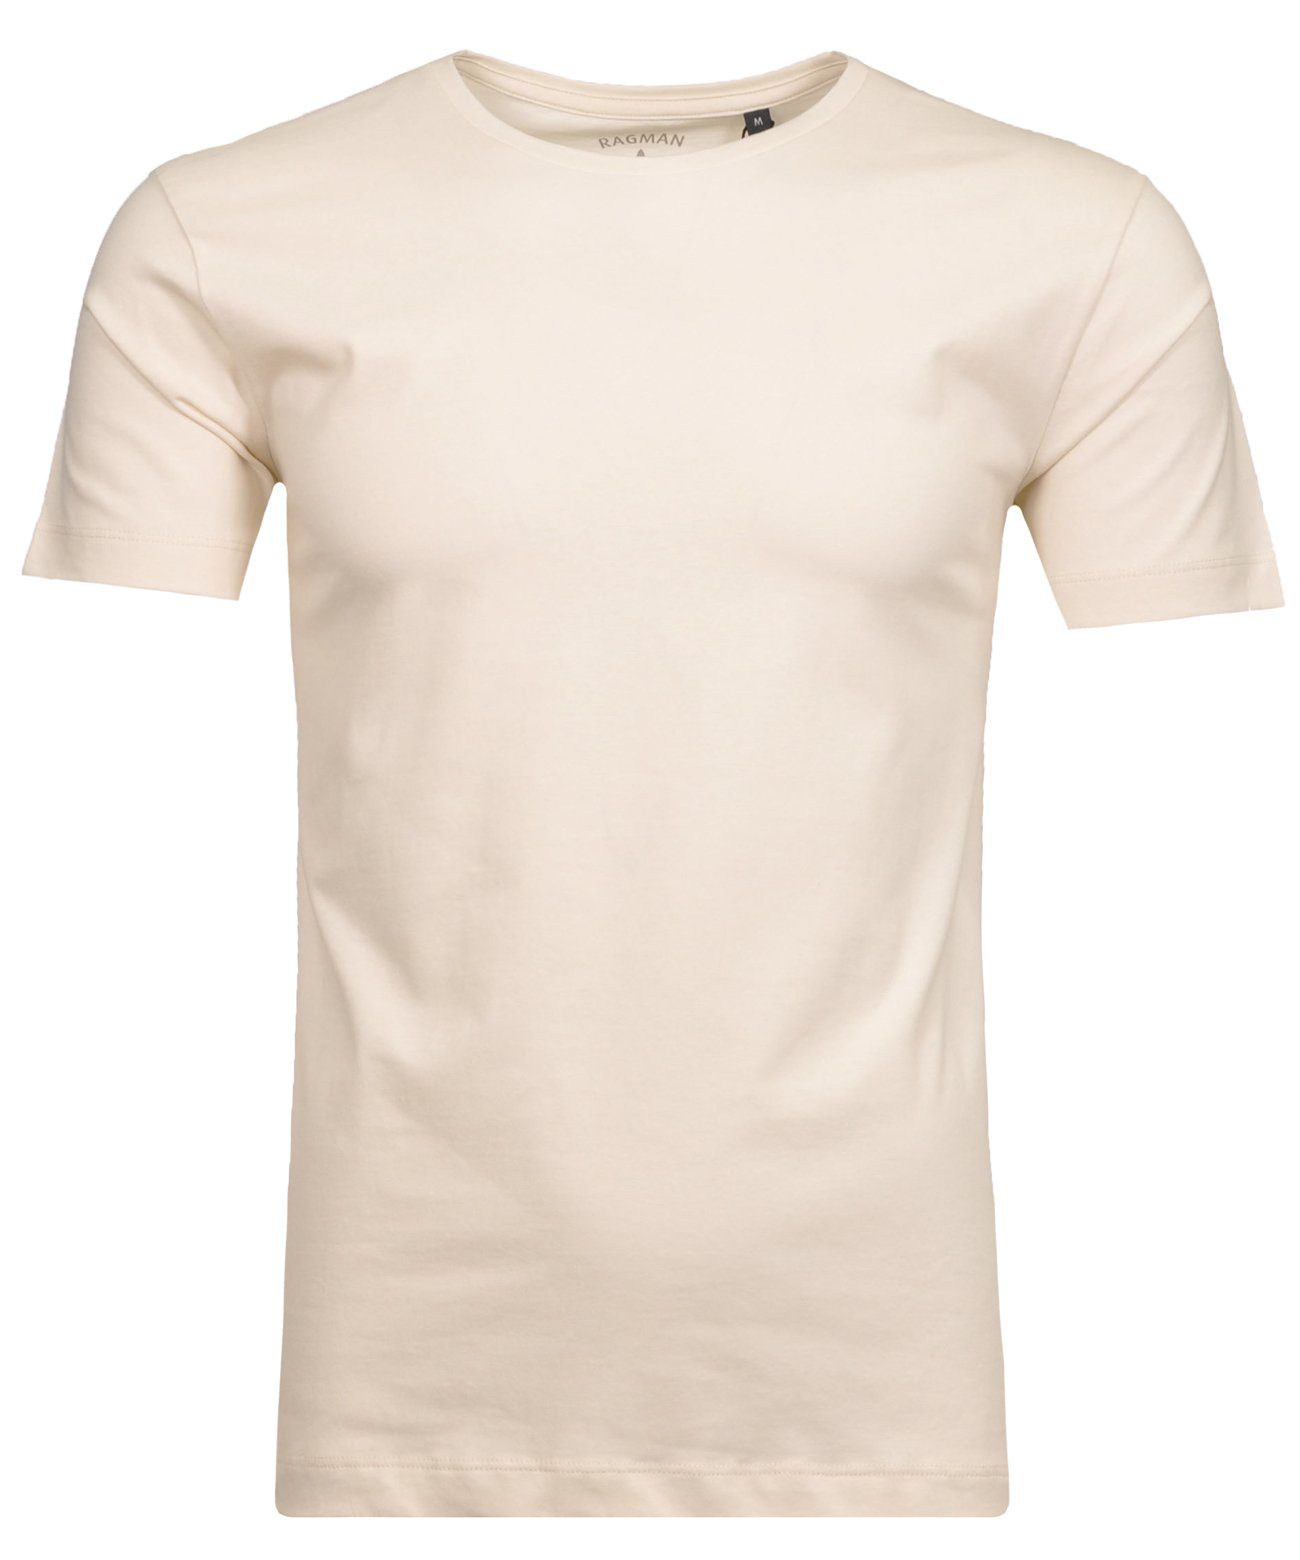 T-Shirt RAGMAN Ecru-004